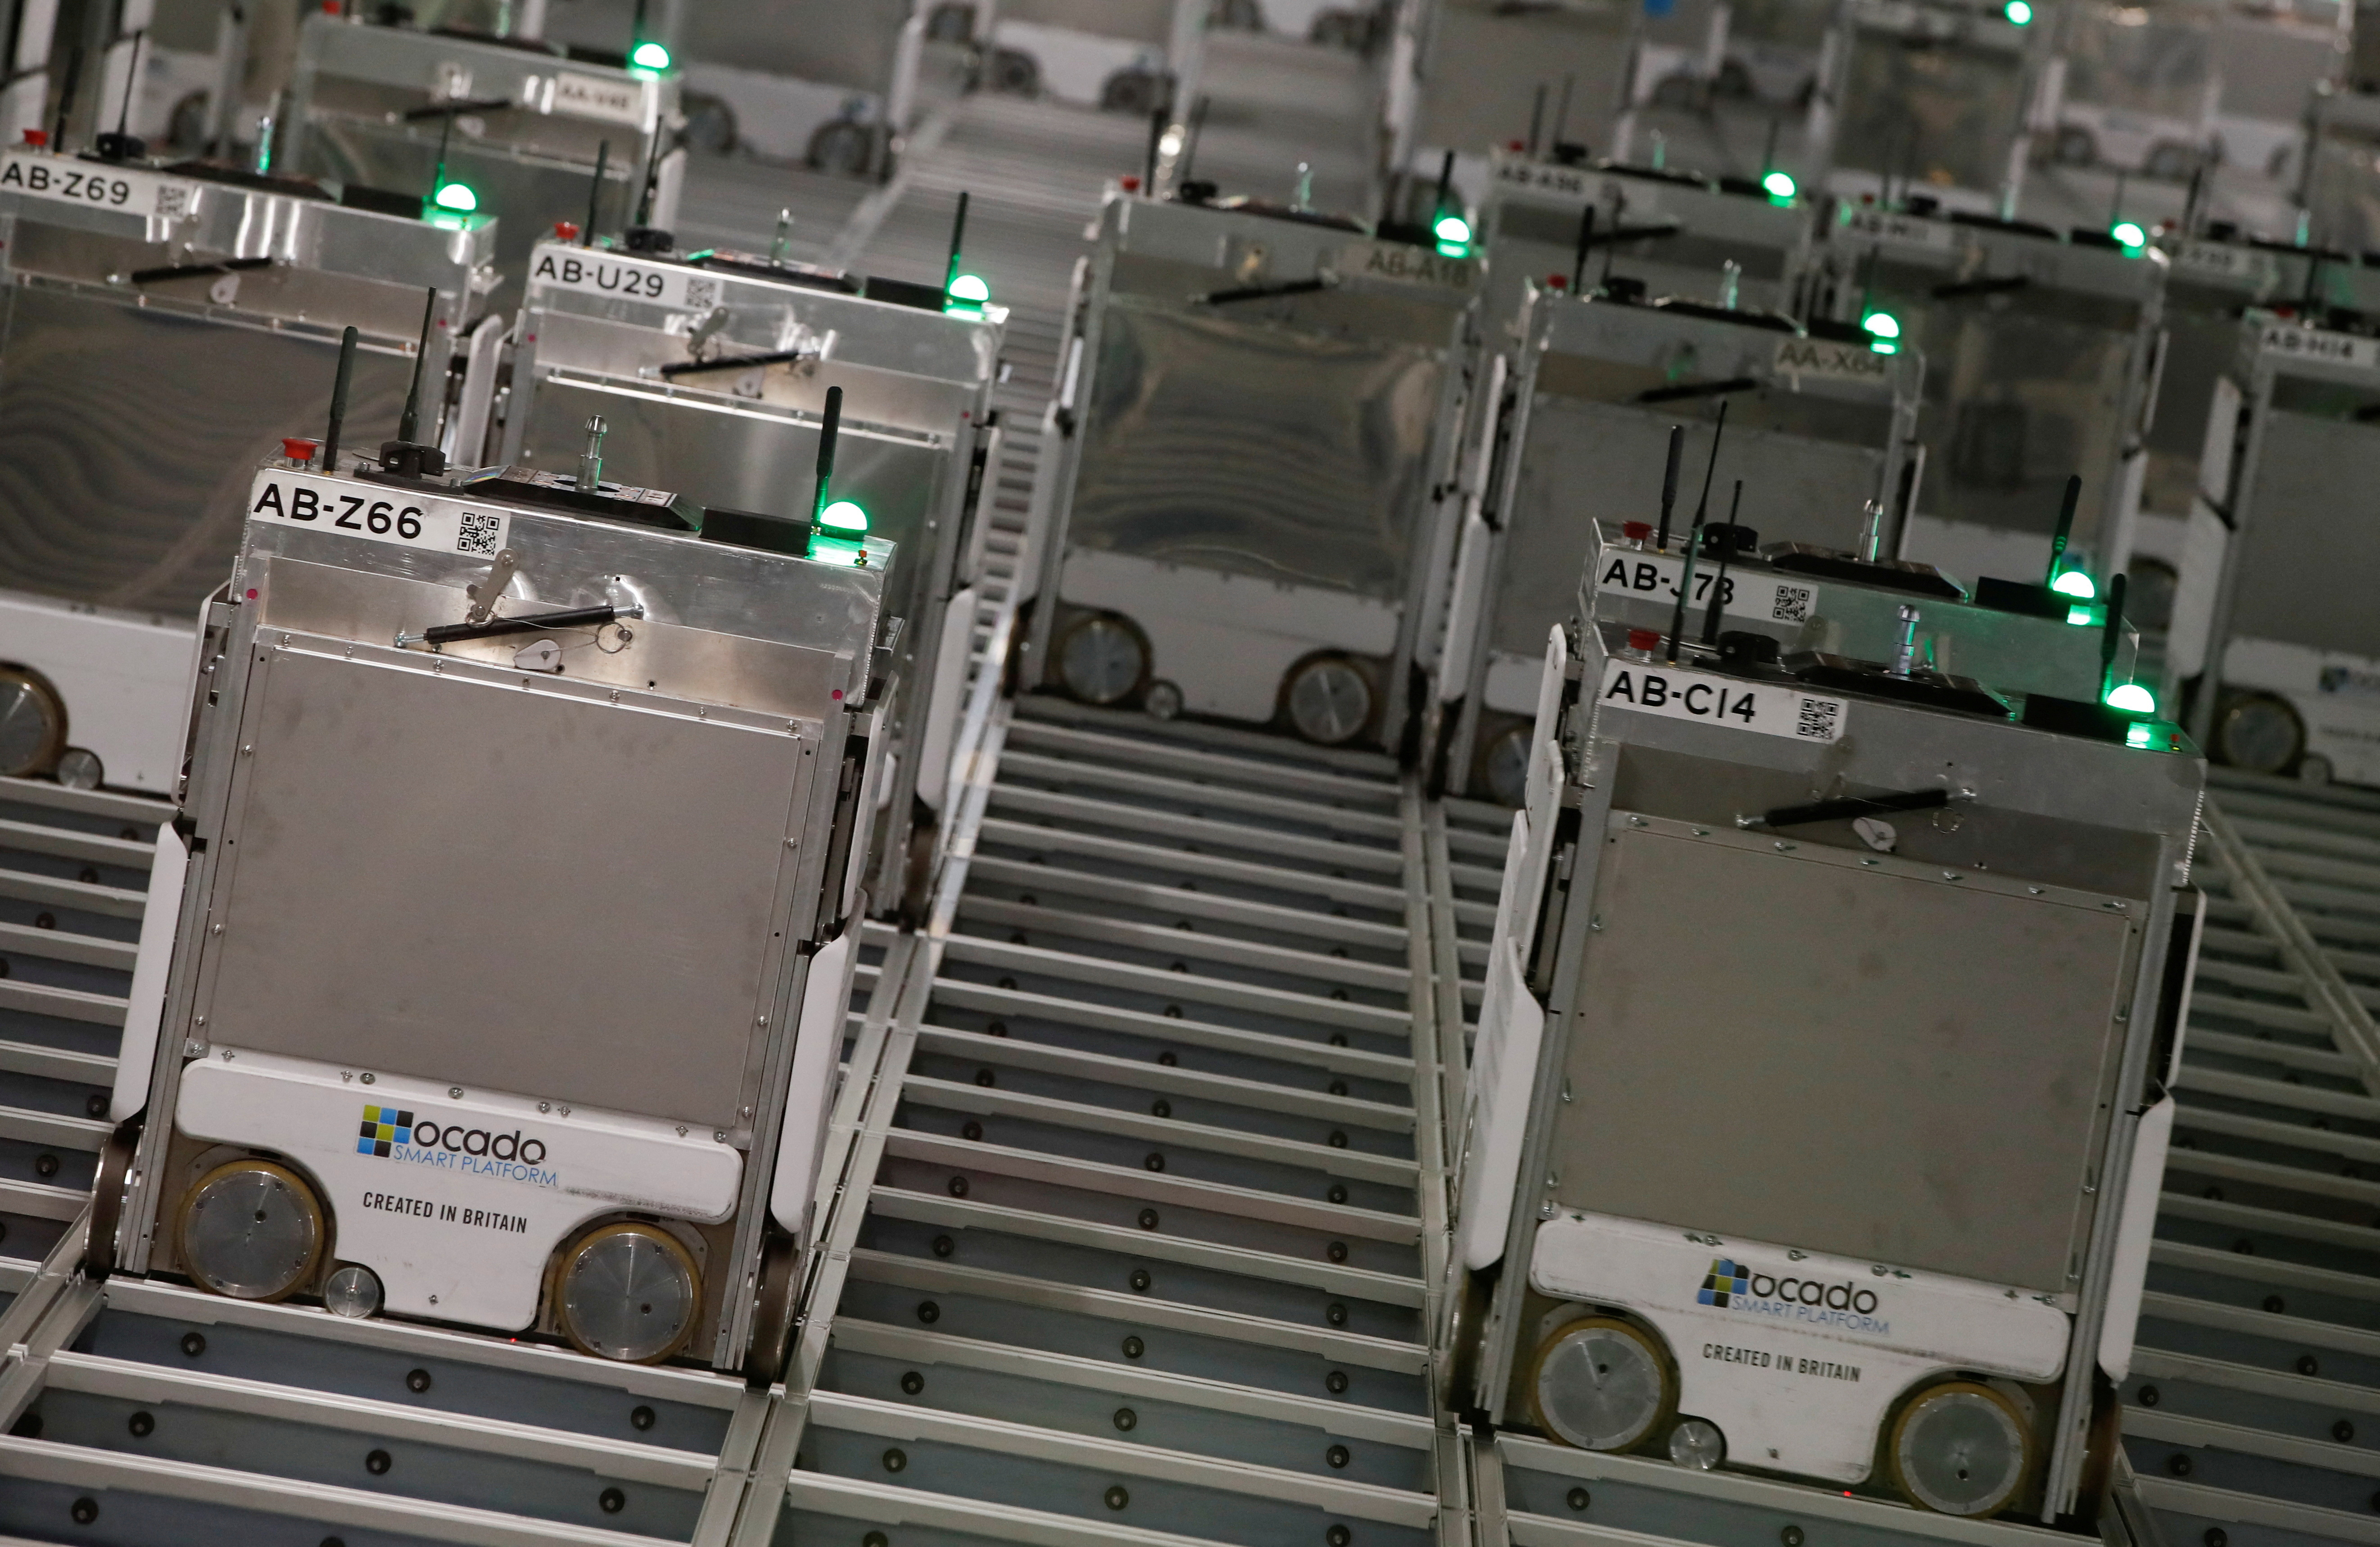 Ocado robots are seen inside a warehouse in Erith